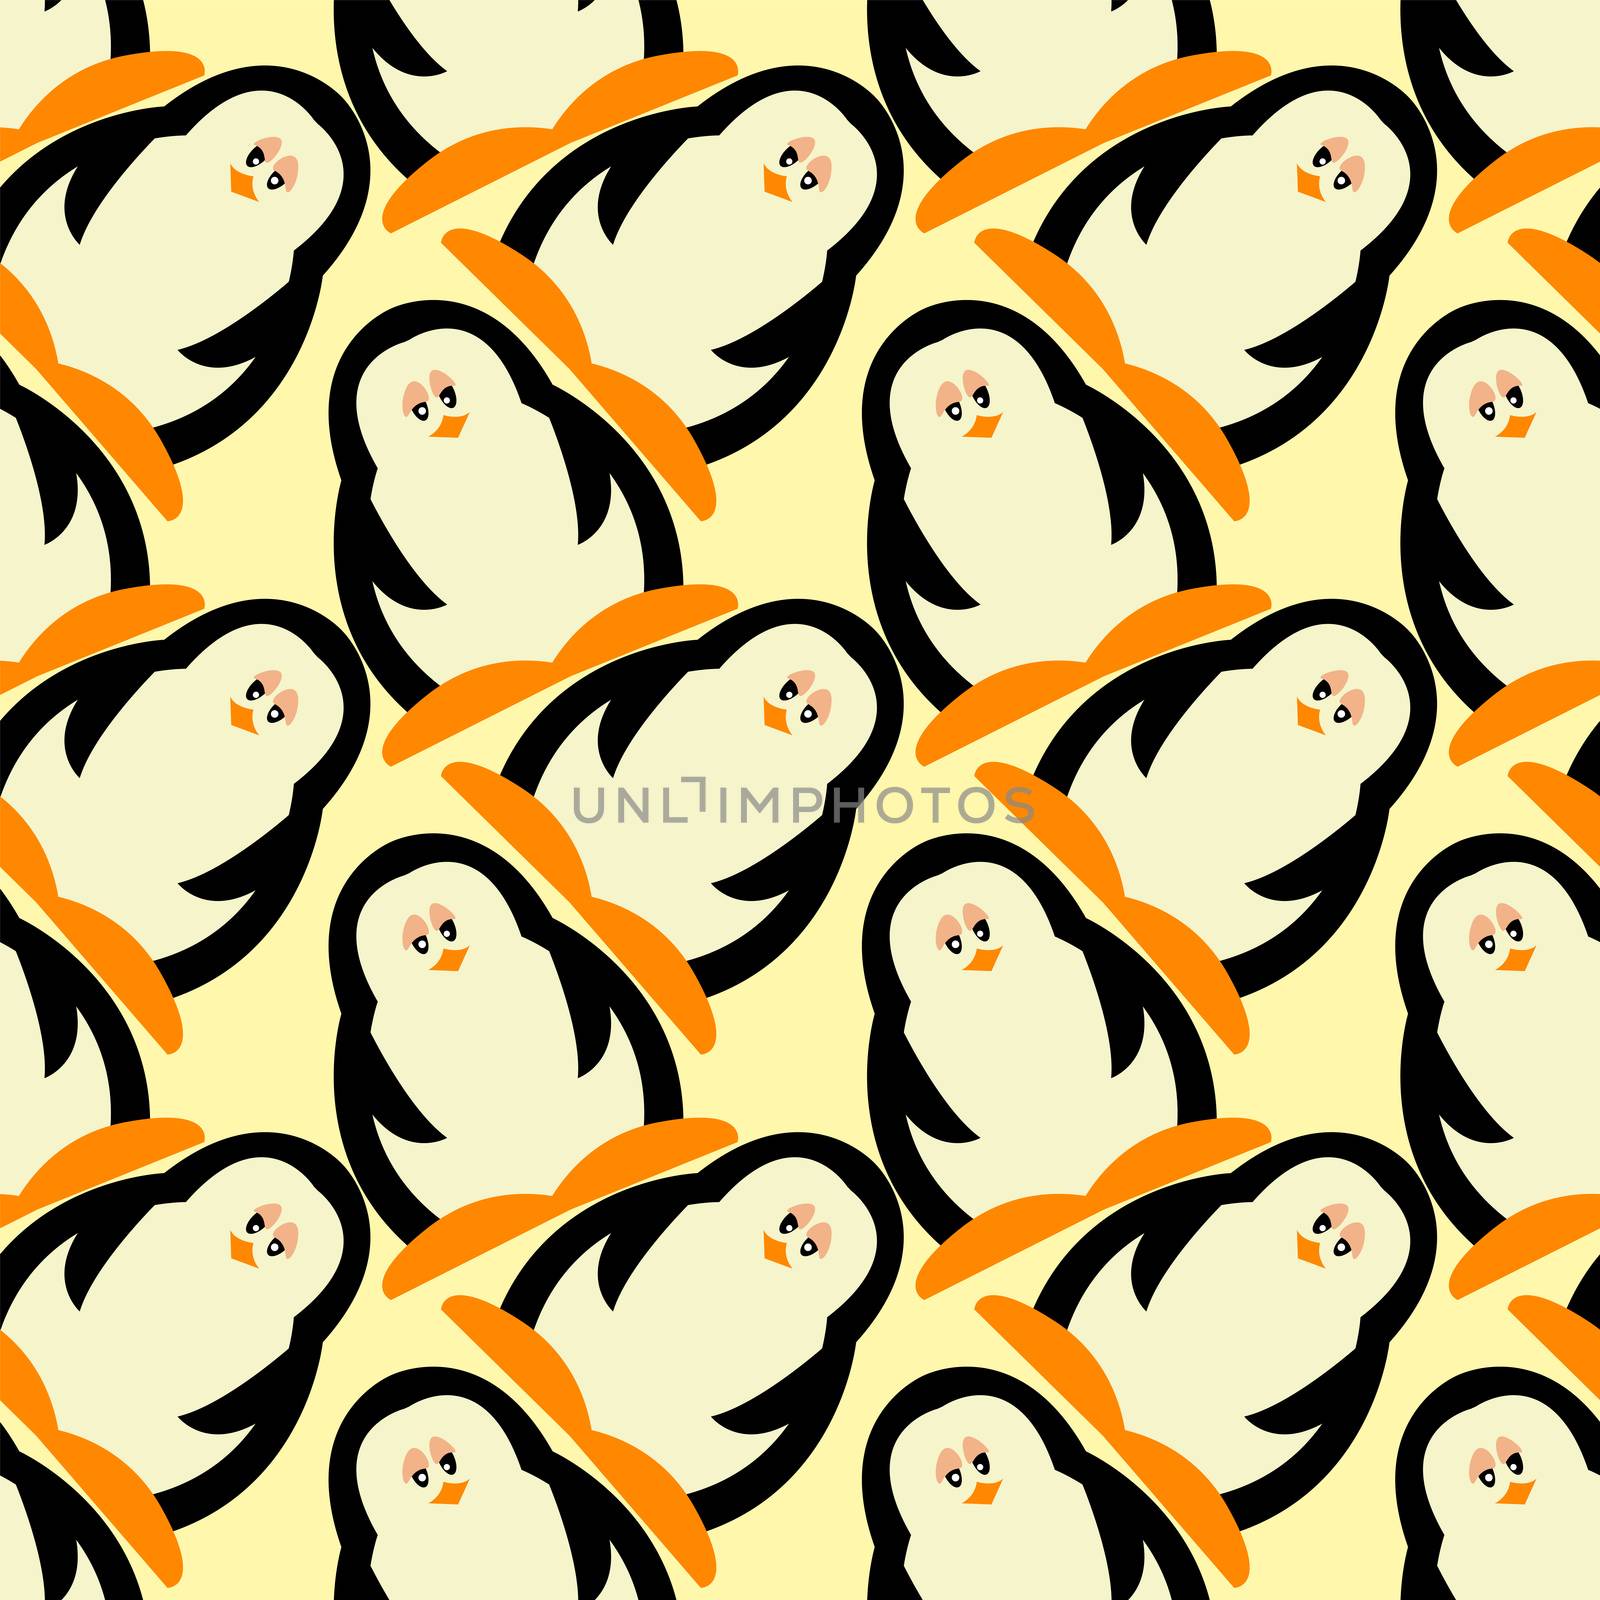 Penguin pattern , illustration, vector on white background by Morphart